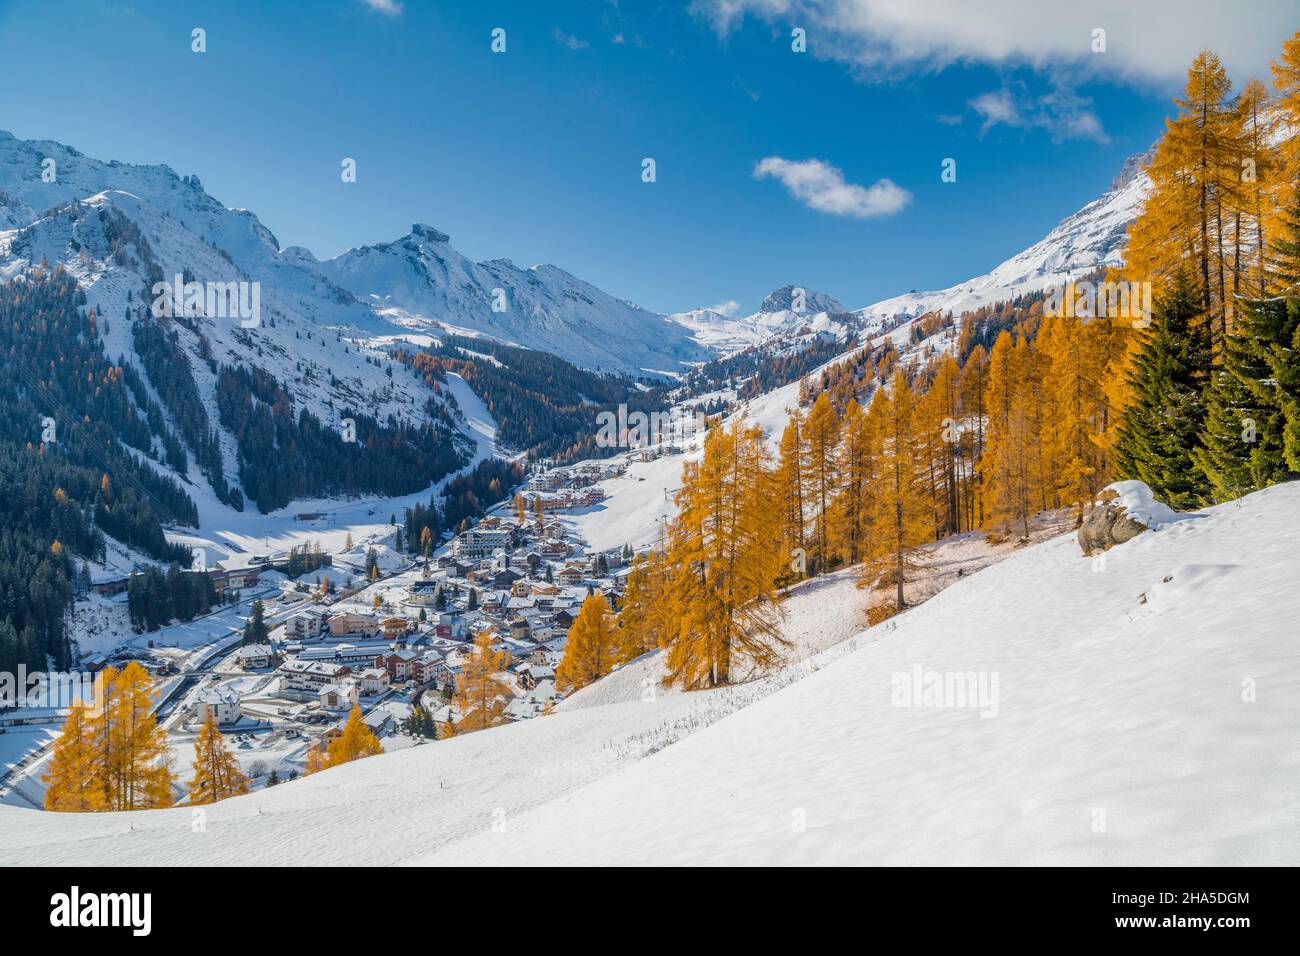 arabba,winter ski resort,livinallongo del col di lana,belluno,dolomites,veneto,italy Stock Photo